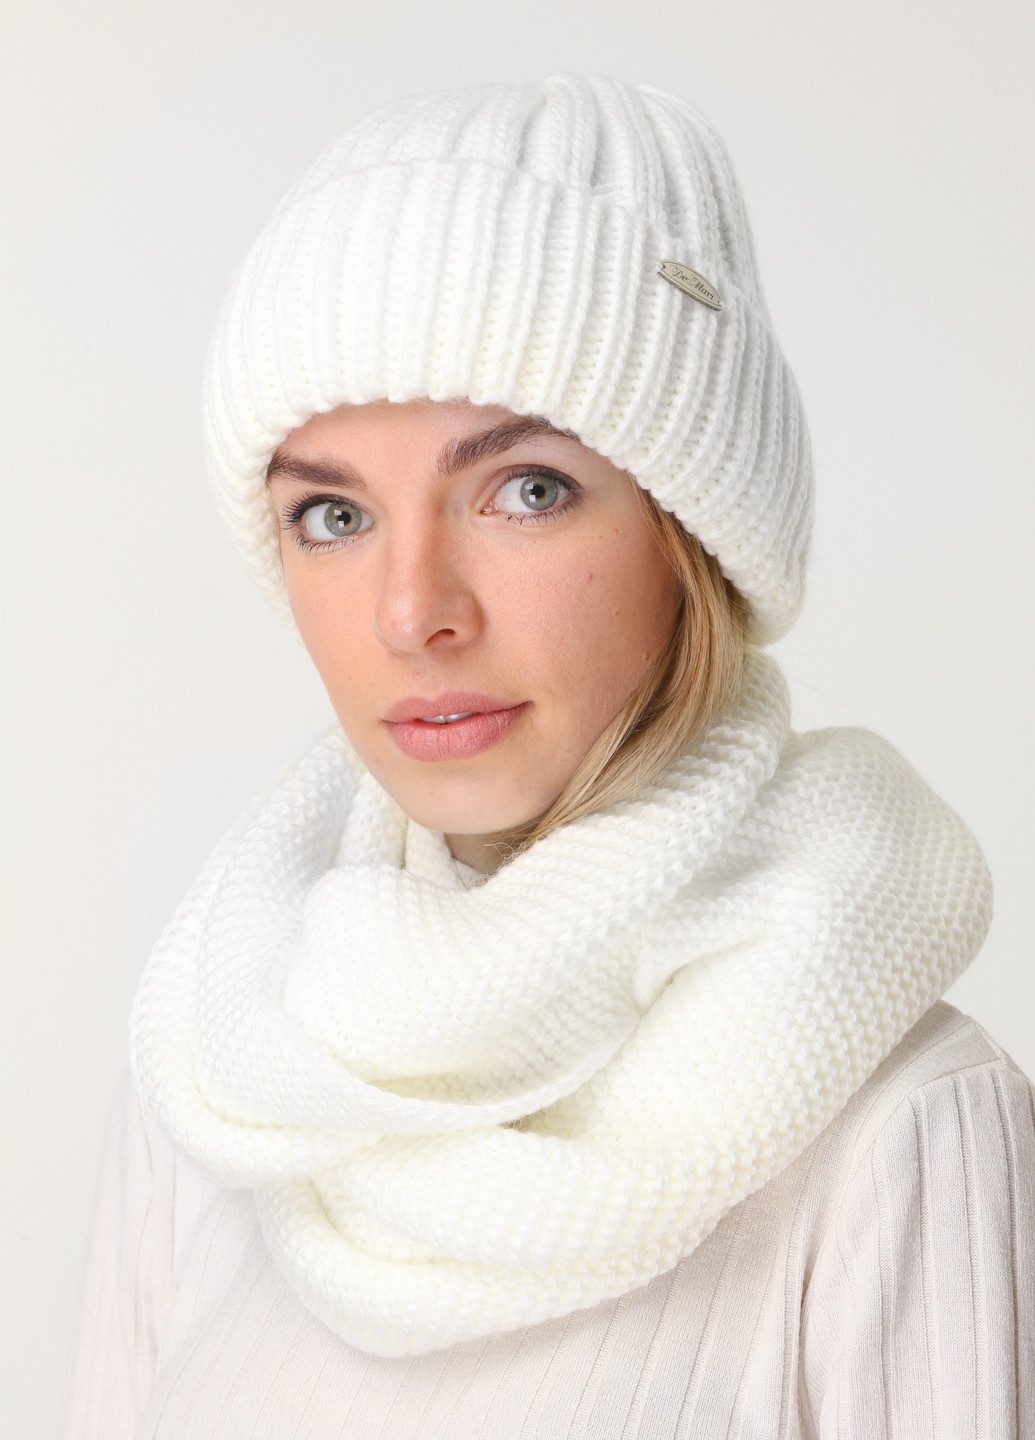 Теплый зимний комплект (шапка, шарф-снуд) на флисовой подкладке и отворотом 600045 DeMari Мия шапка + шарф-снуд однотонные молочные повседневные шерсть